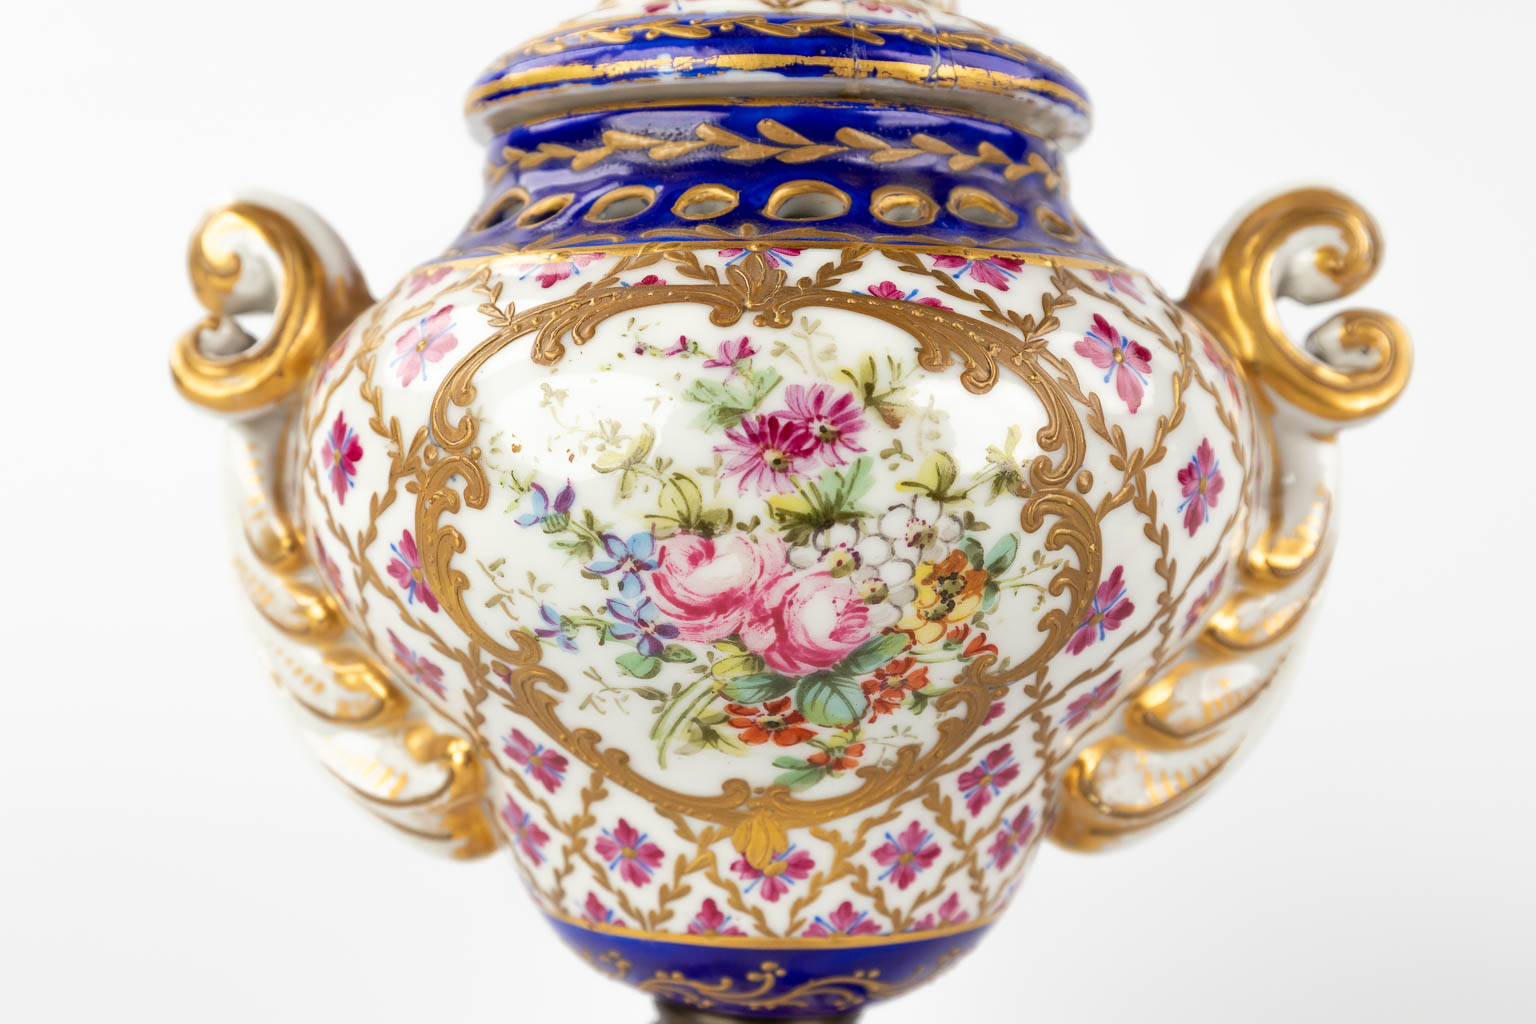 A pair of vases, Sèvres porcelain, 19th C. (L: 11 x W: 14 x H: 20 cm)